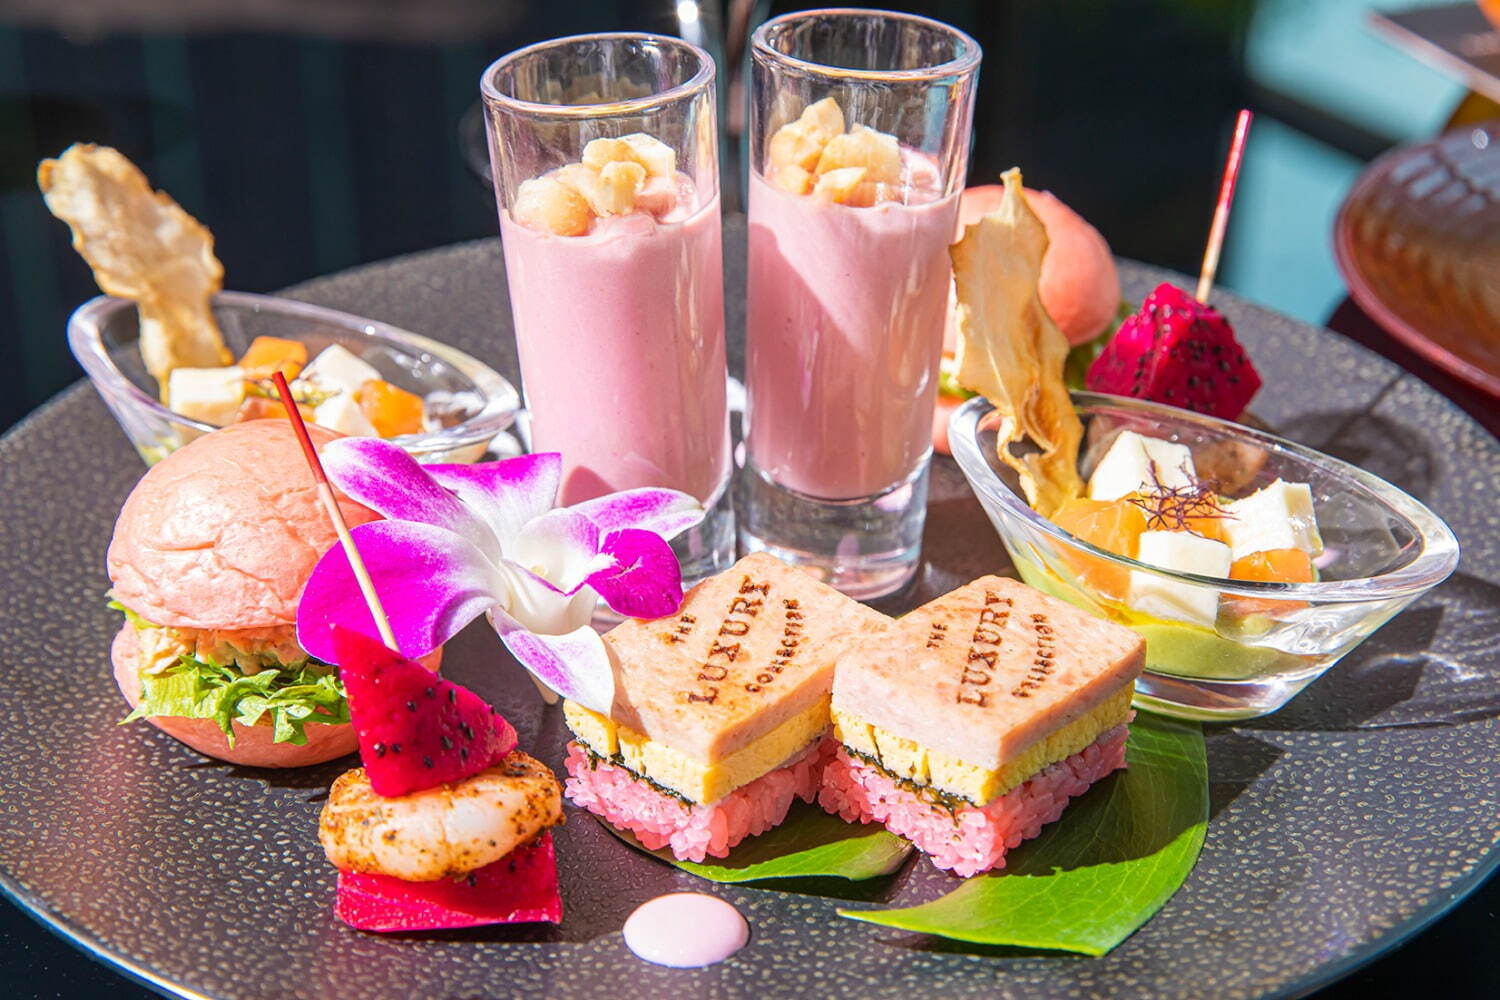 アフタヌーンティー「Pink Palace Afternoon Tea Inspired by The Royal Hawaiian Resort」6,500円